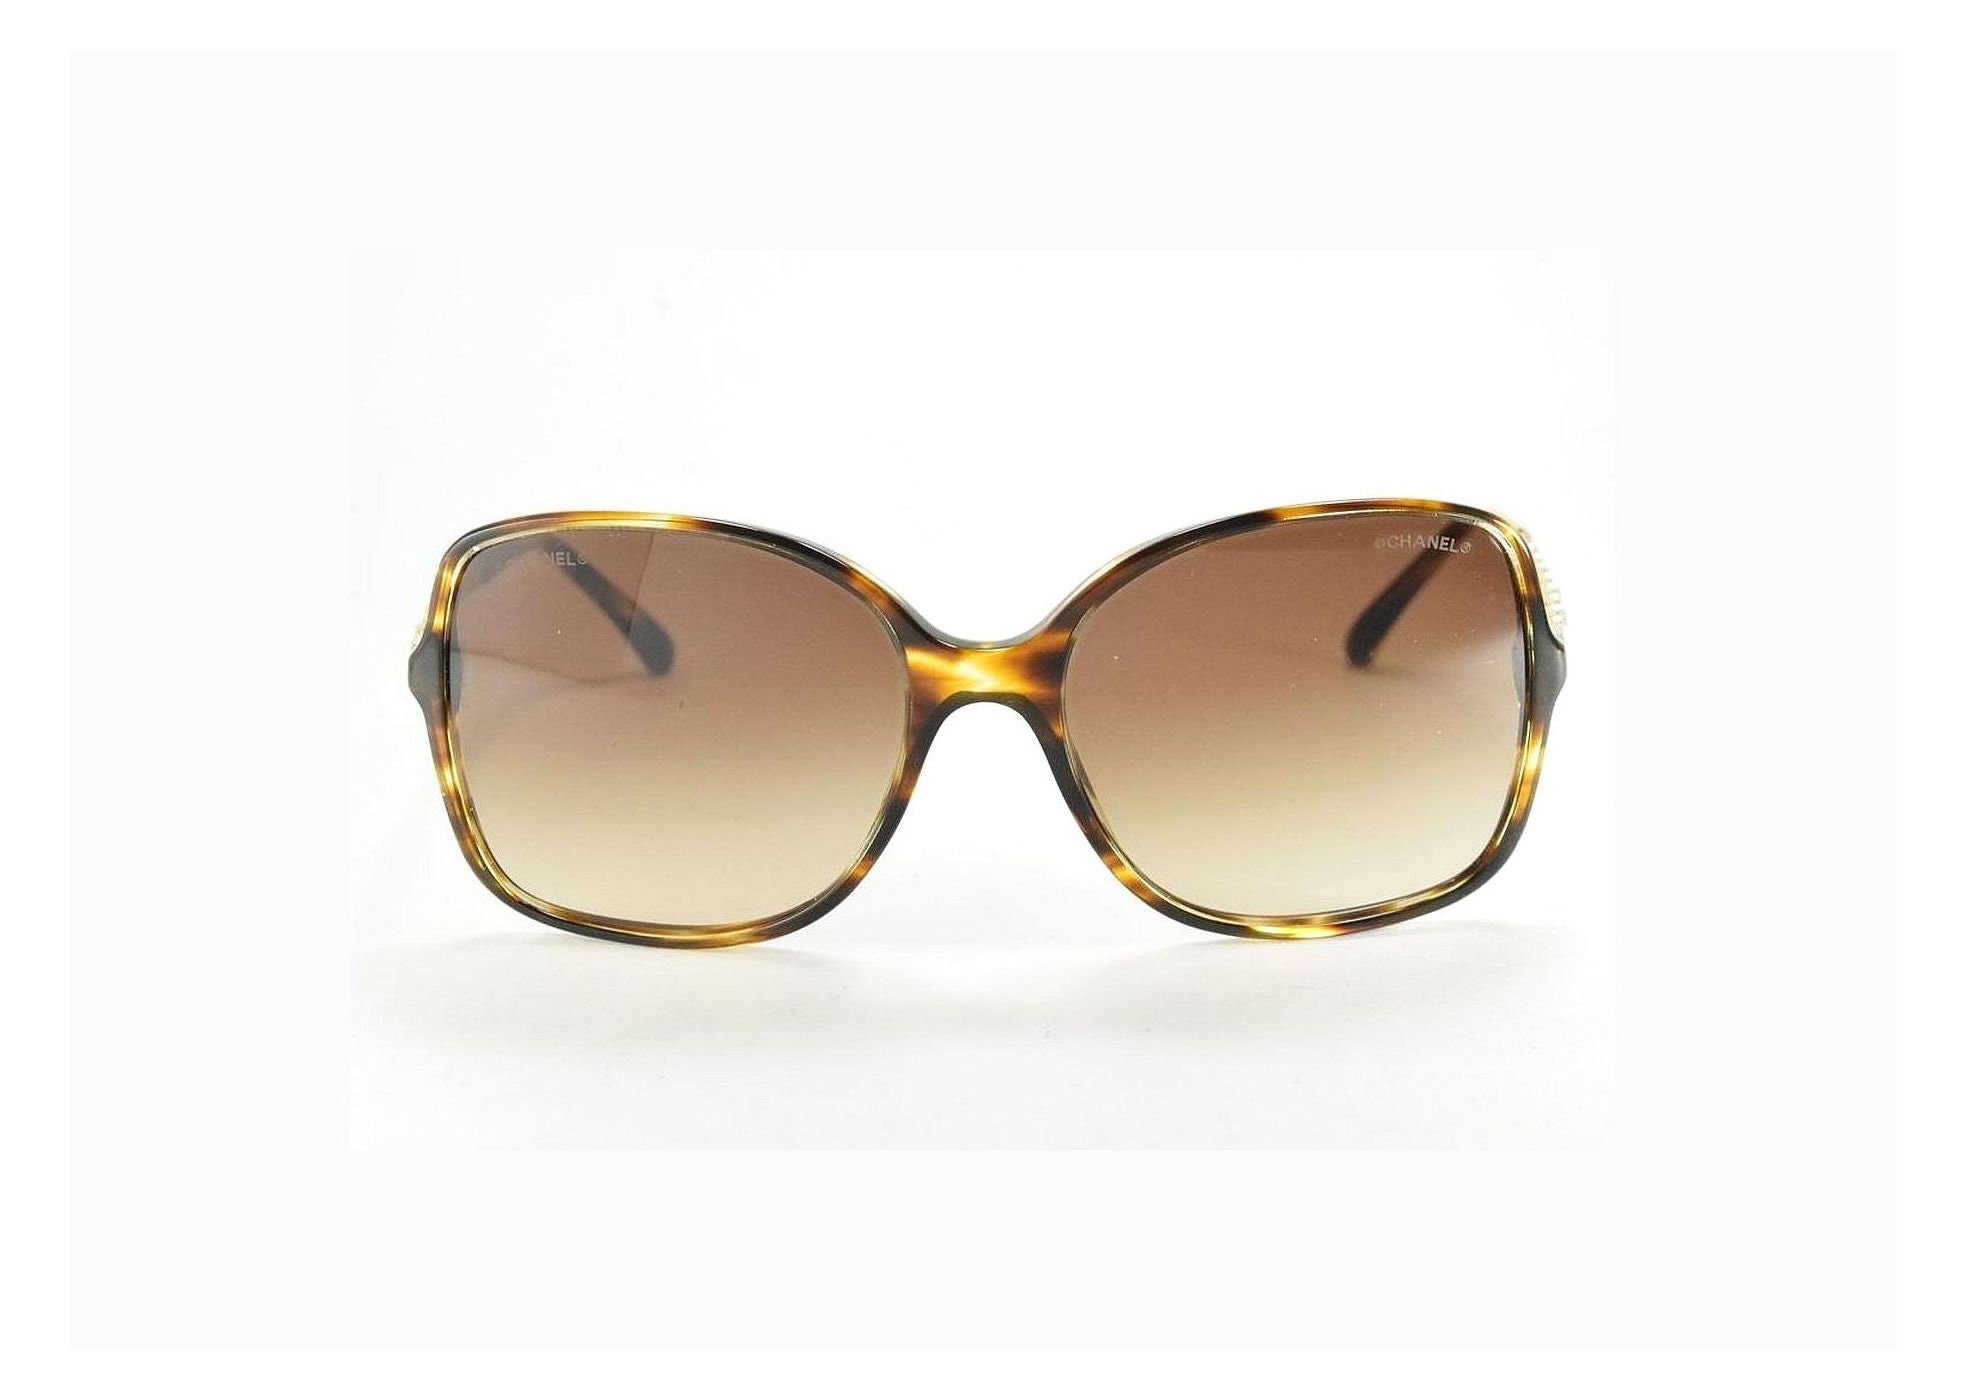 Chanel: Authentic Sunglasses Model # 5210 Q Col.1074/s6